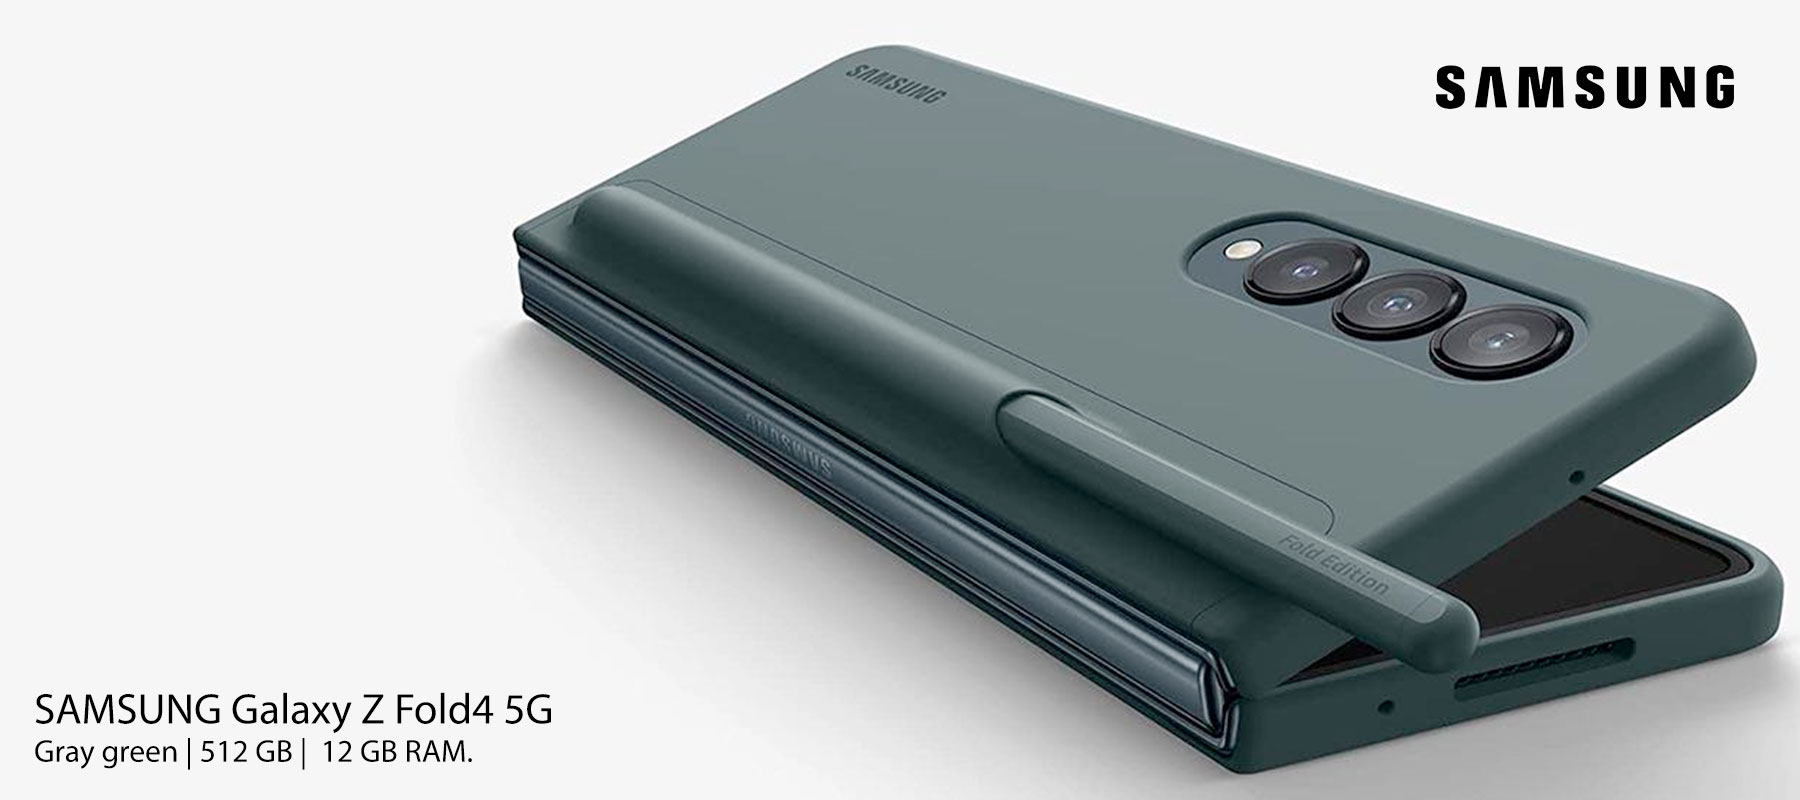 SAMSUNG Galaxy Z Fold4 5G (Gray green, 256 GB) (12 GB RAM).